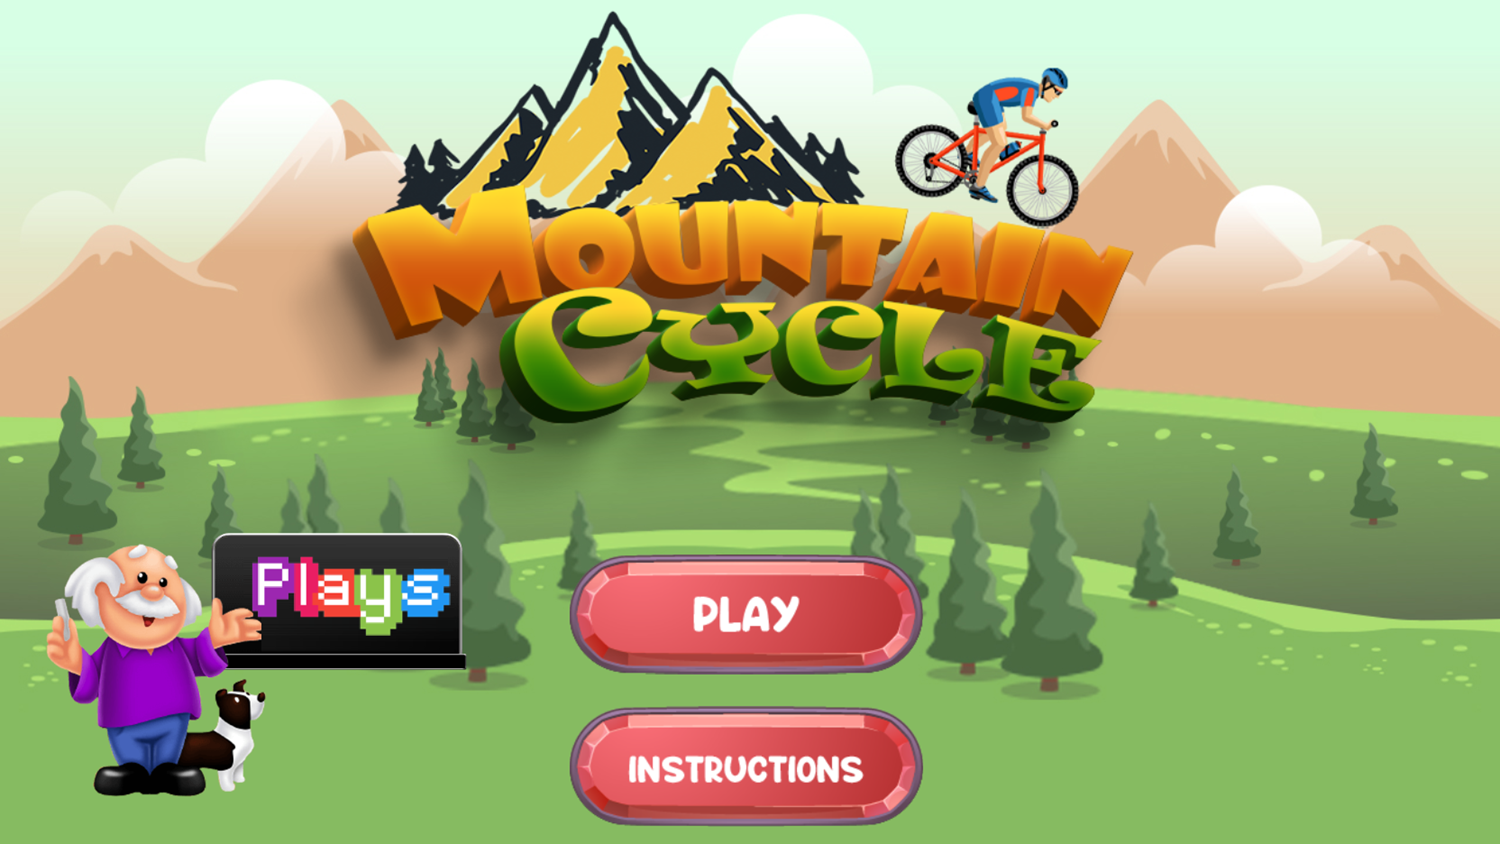 Mountain Cycle Game Welcome Screen Screenshot.